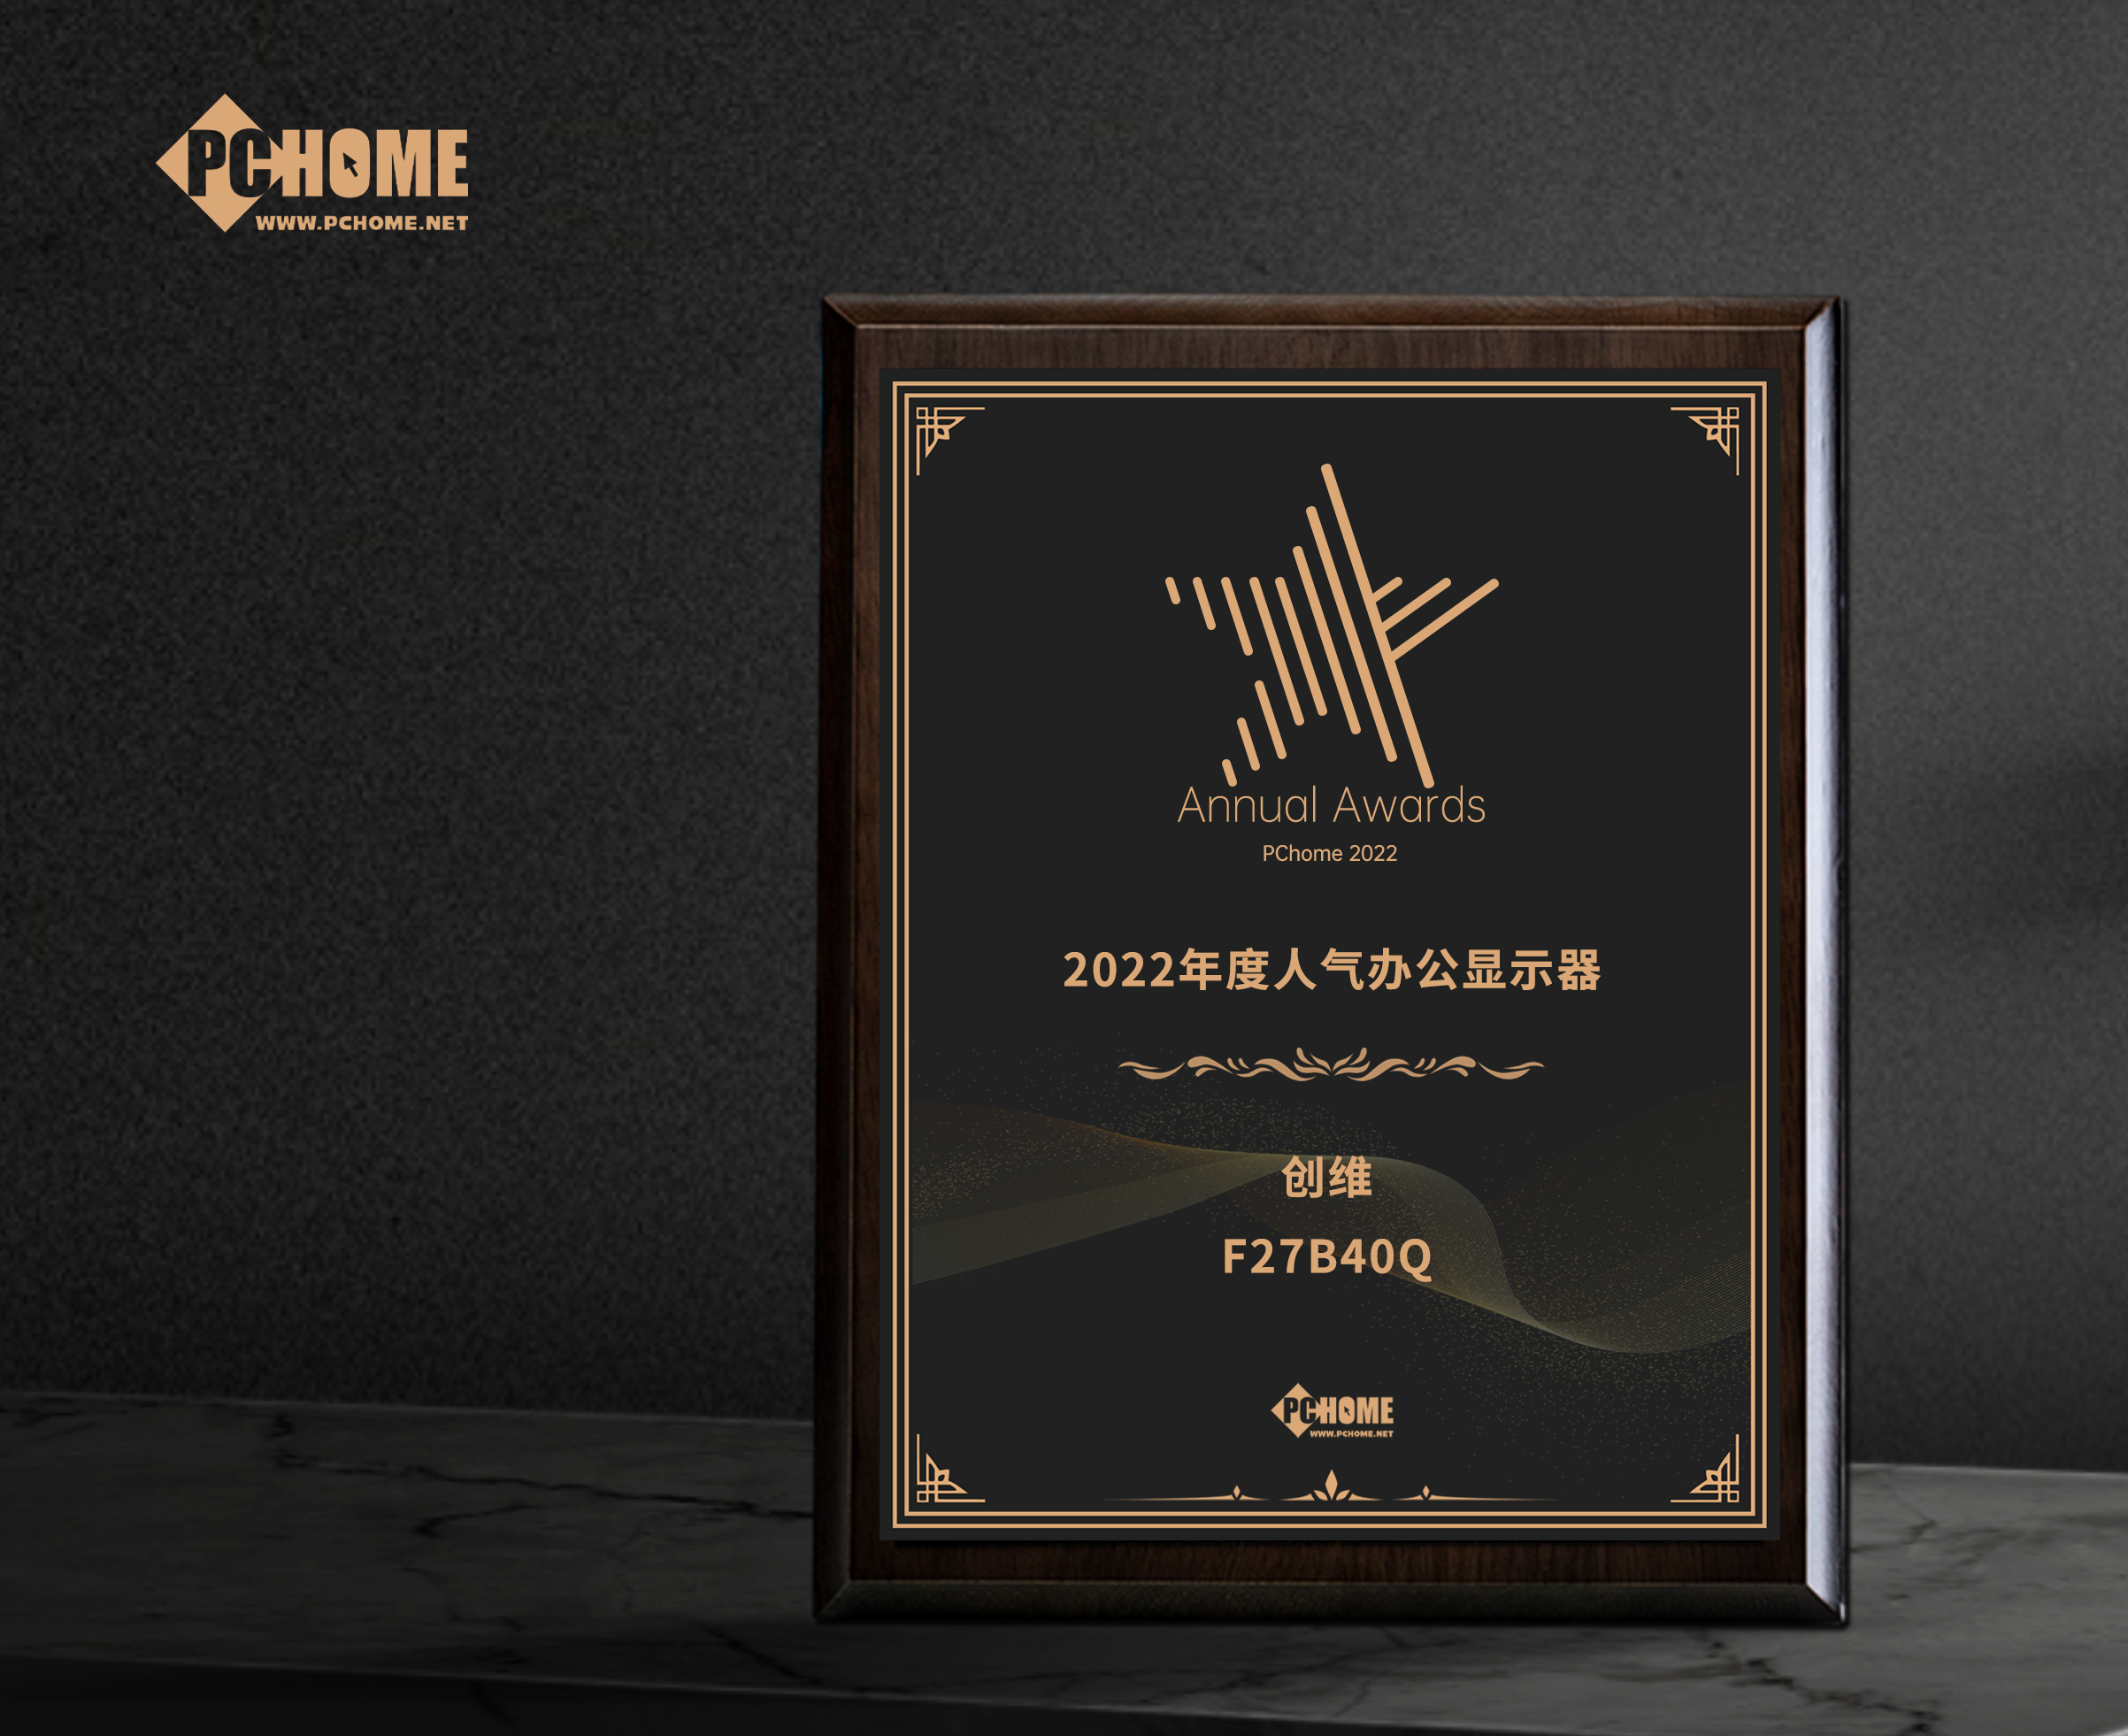 河北省創維F27B40Q獲得PChome2022年度人氣辦公顯示器獎項